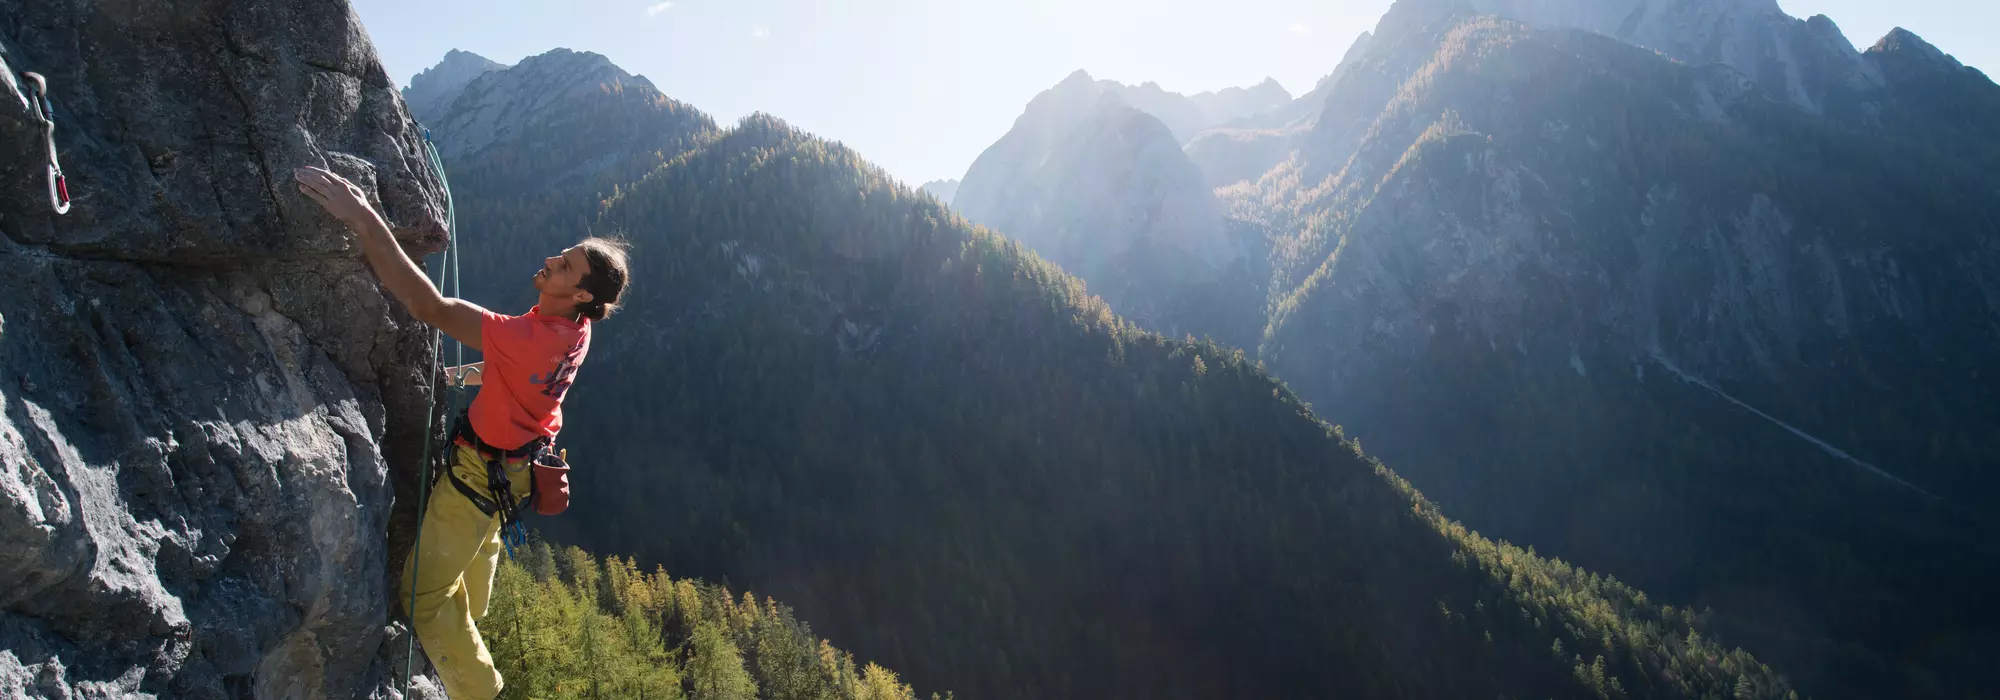 Kletternroute "Another Play in Paradies" - Dolomitenhütte Osttirol © Tirol Werbung / Johannes Mair